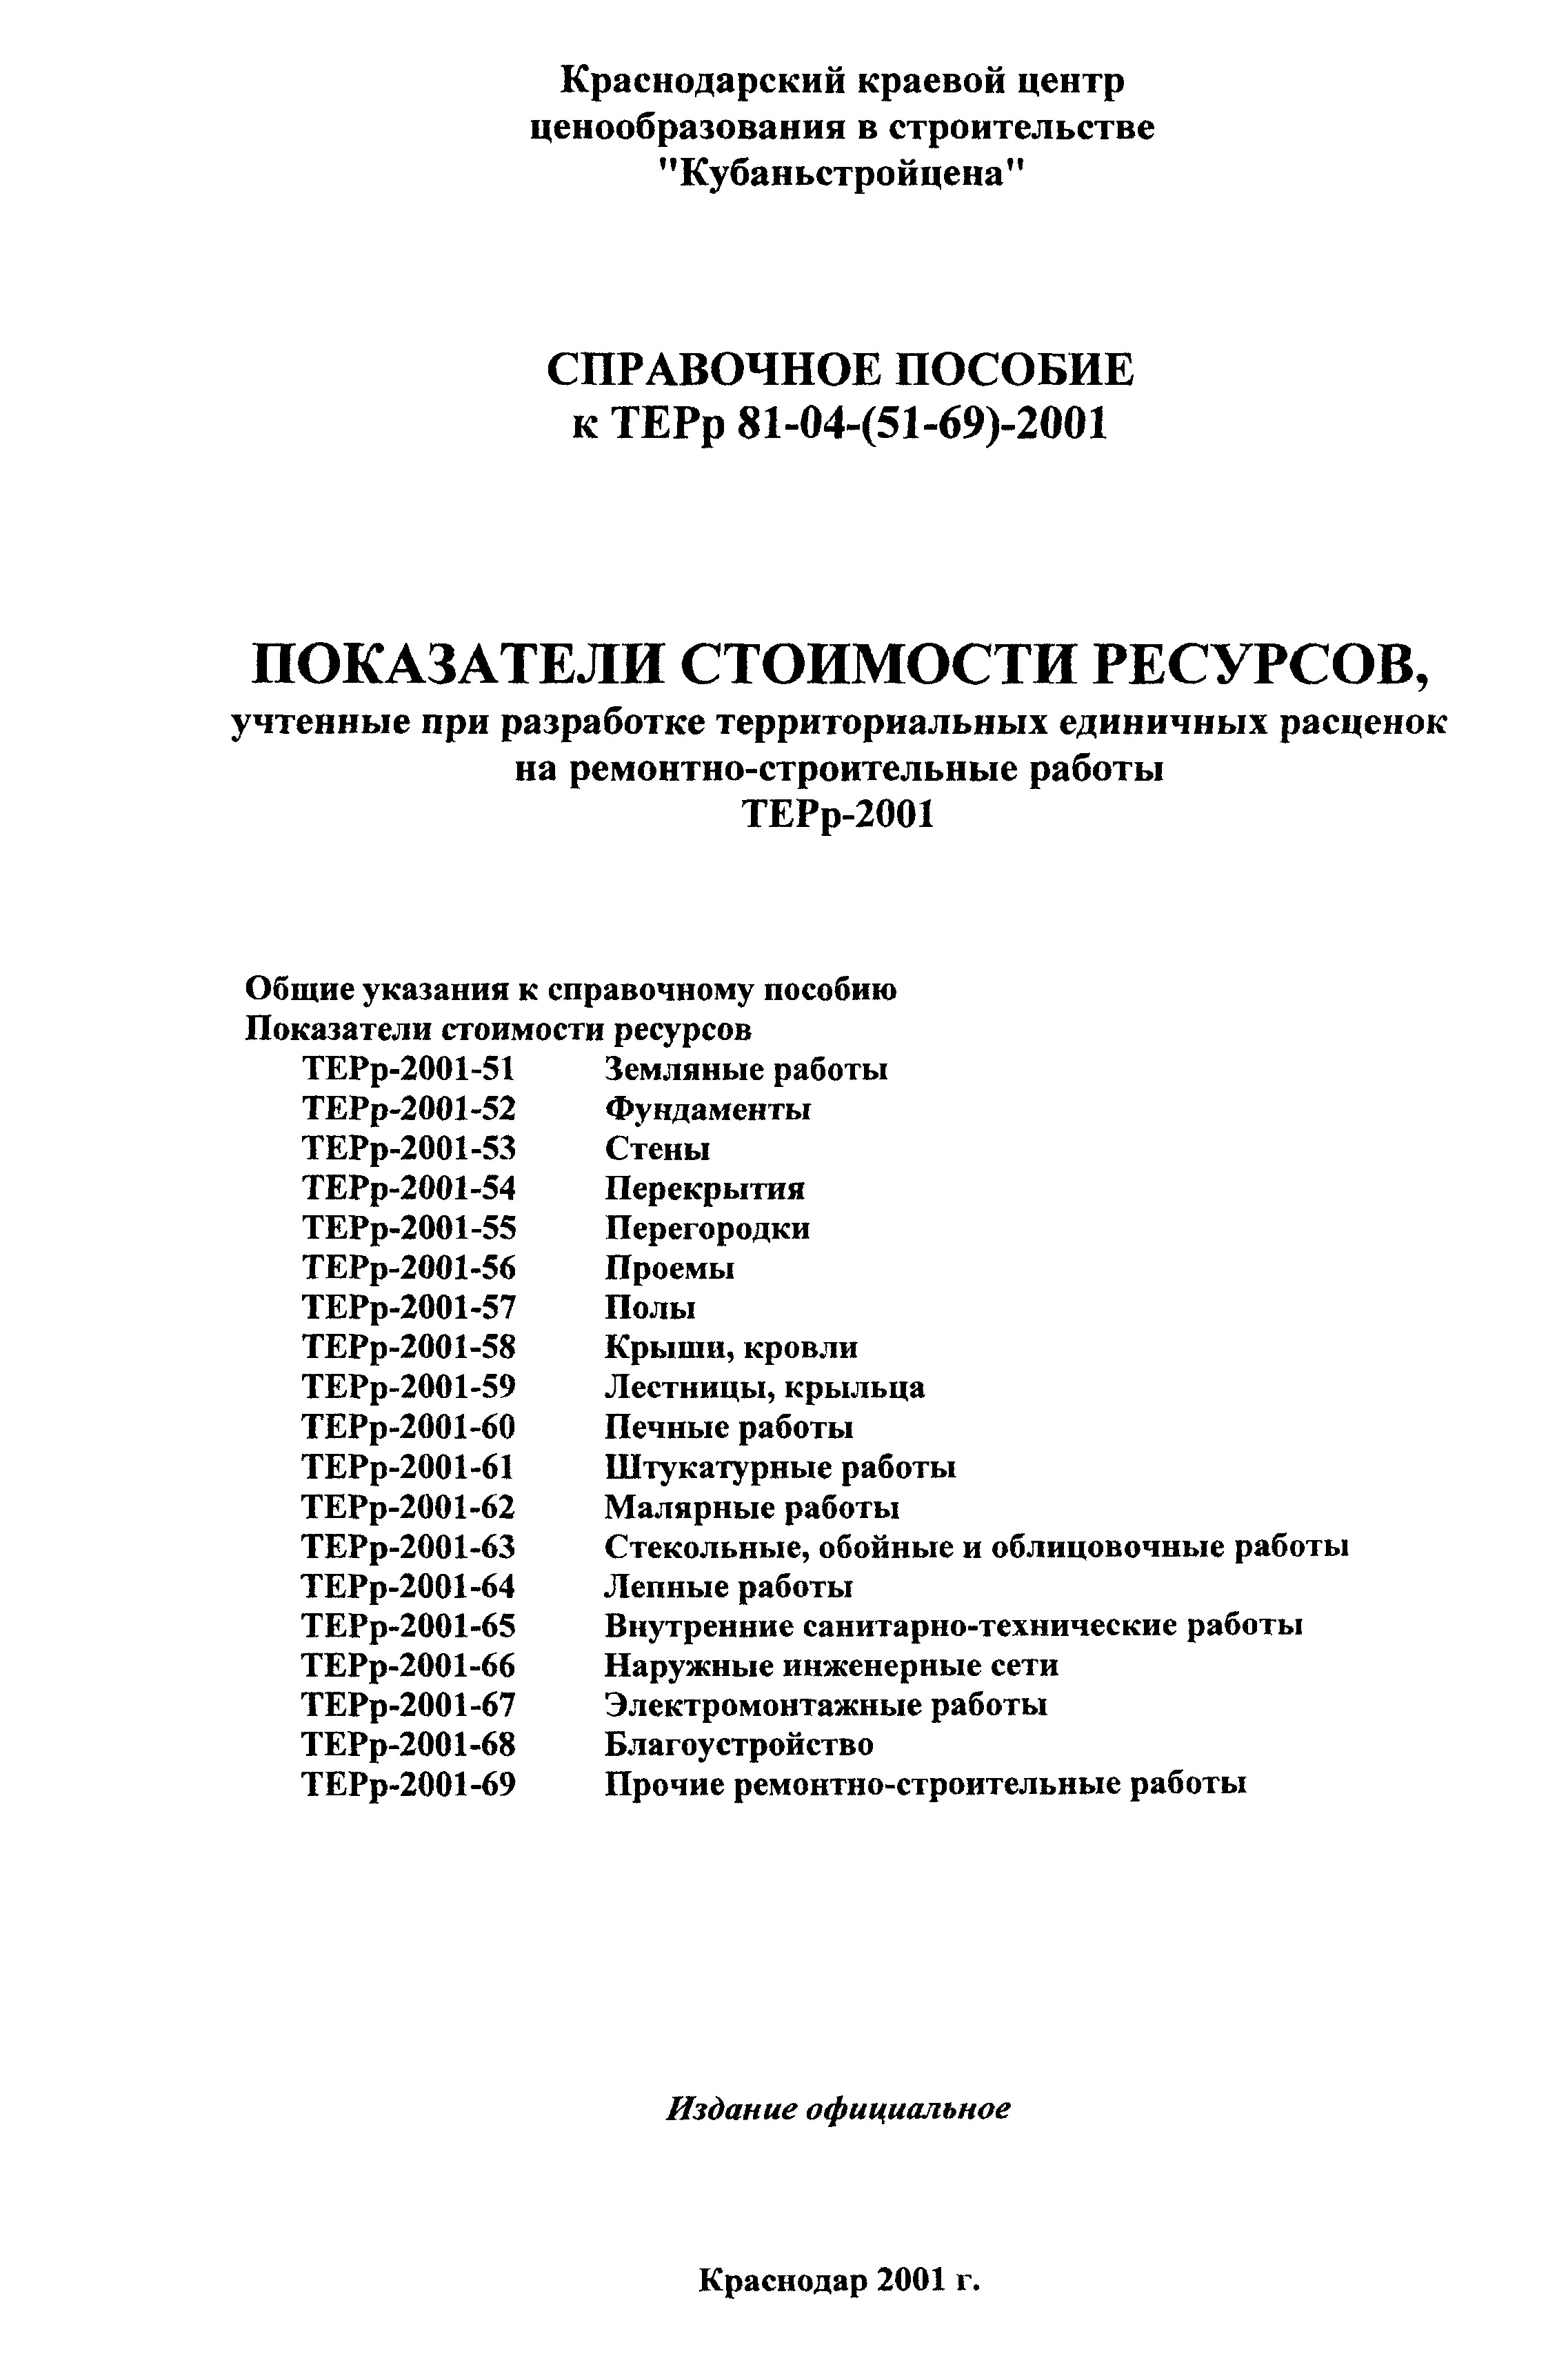 Справочное пособие к ТЕРр 81-04-58-2001